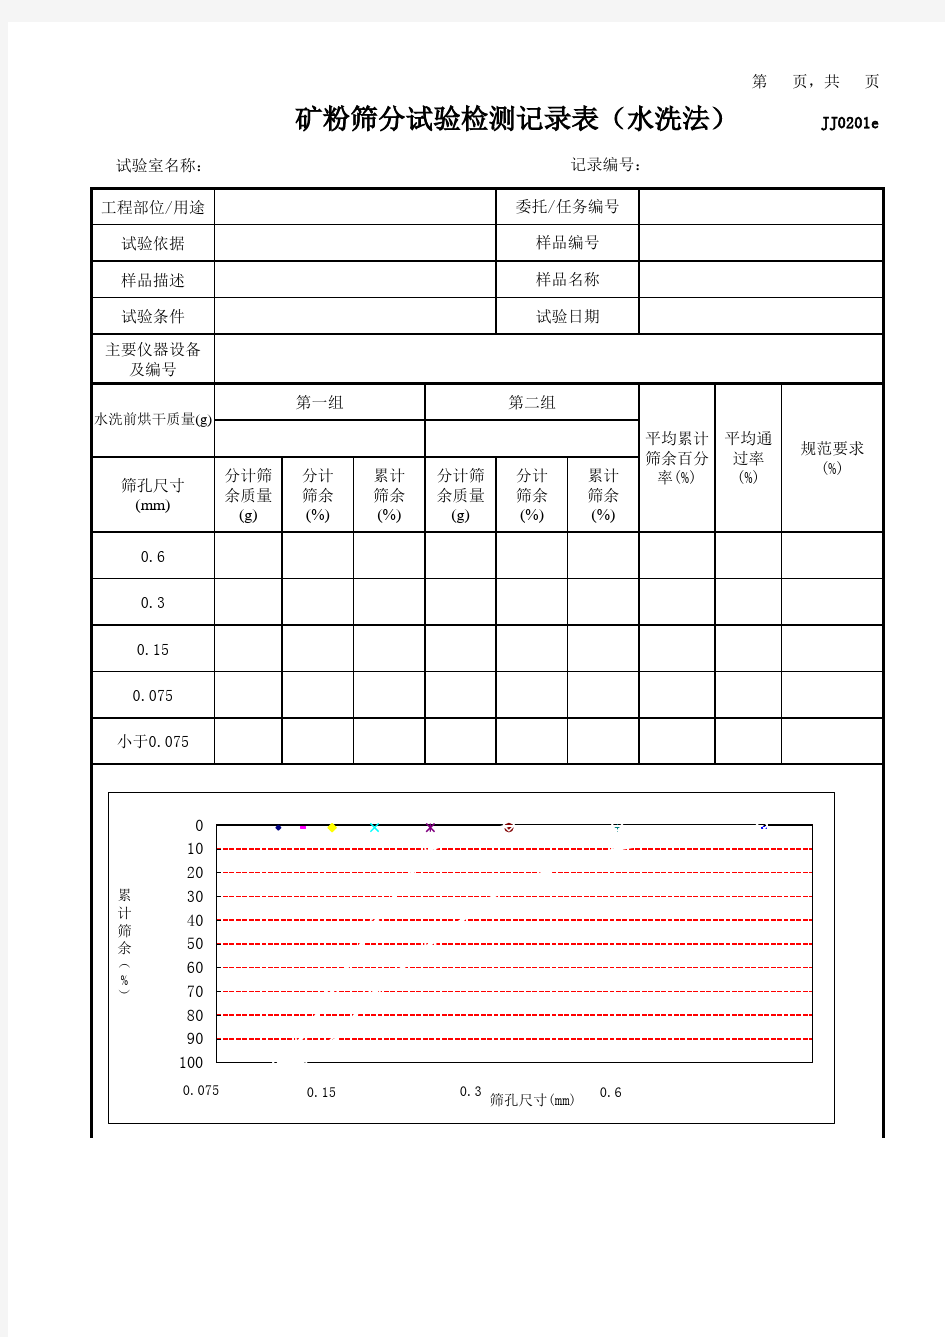 矿粉筛分试验检测记录表(水洗法)